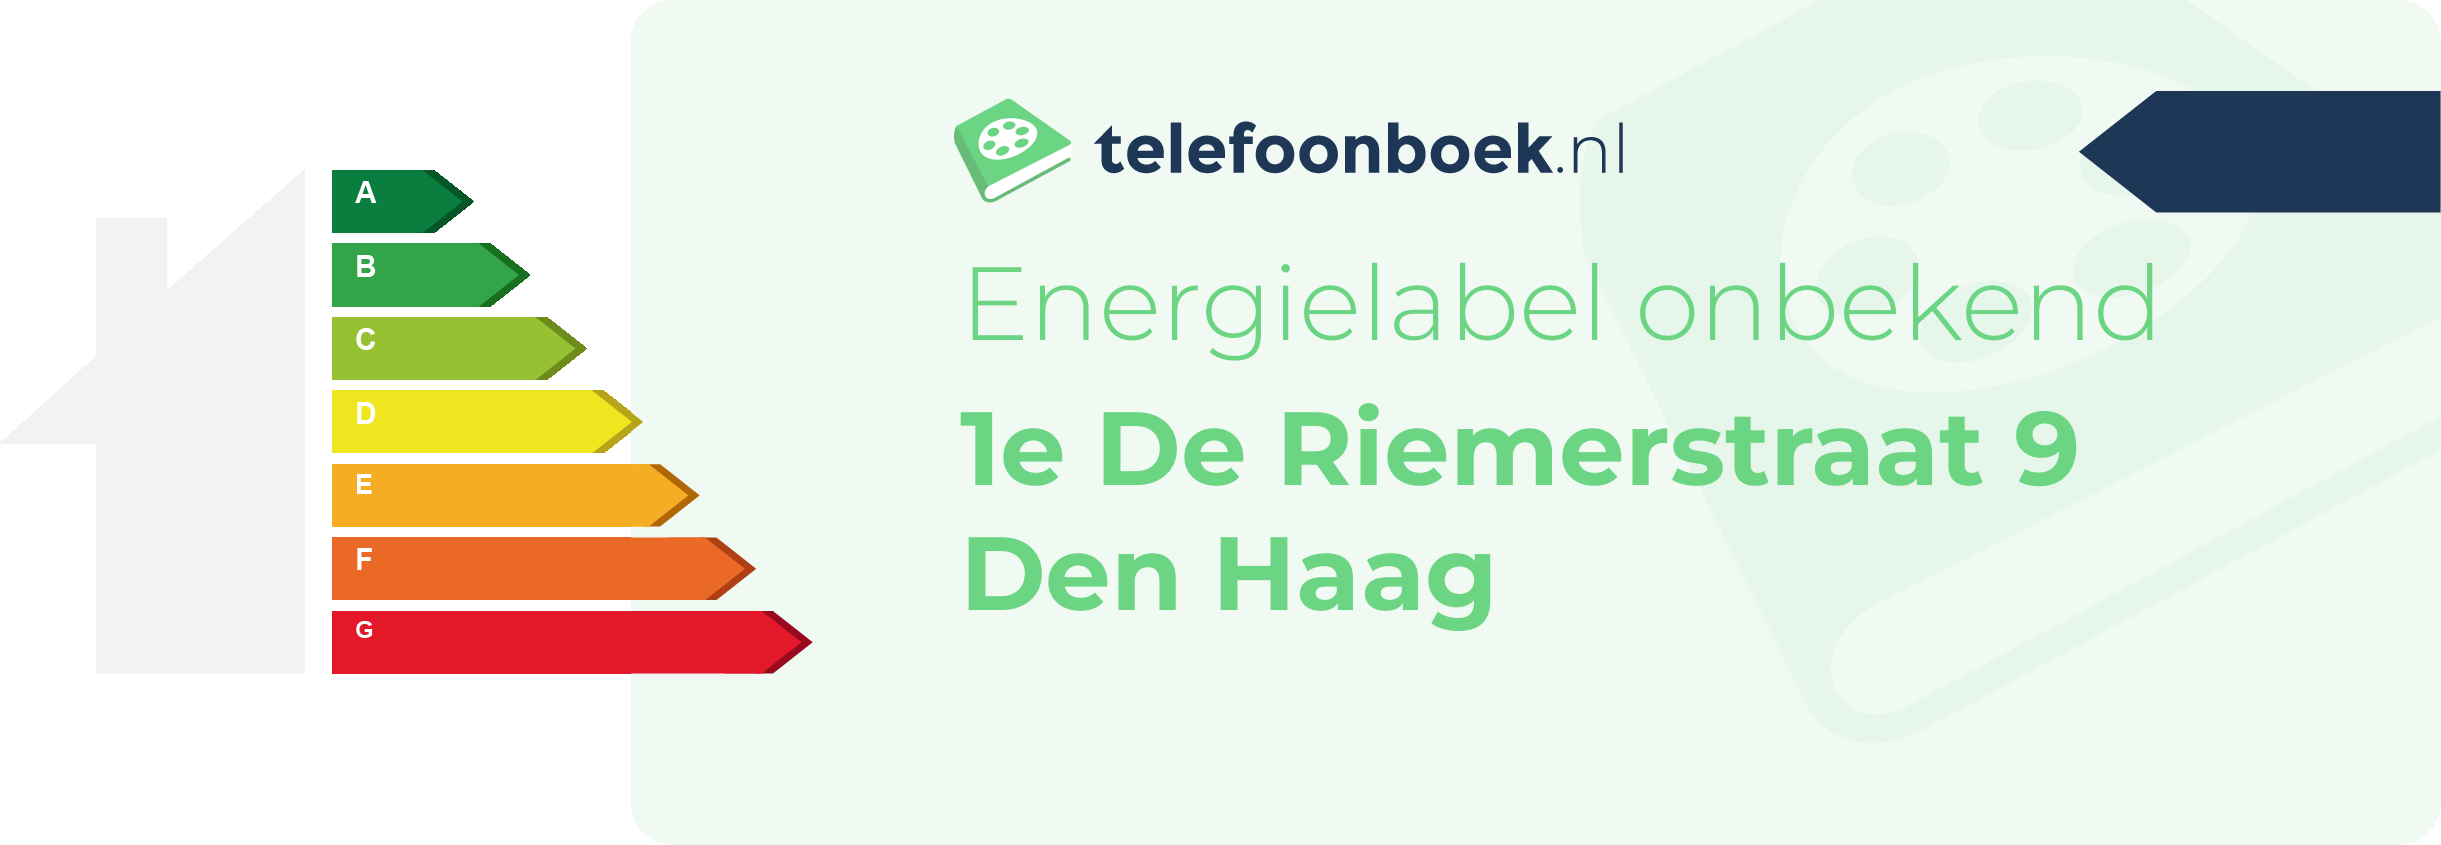 Energielabel 1e De Riemerstraat 9 Den Haag